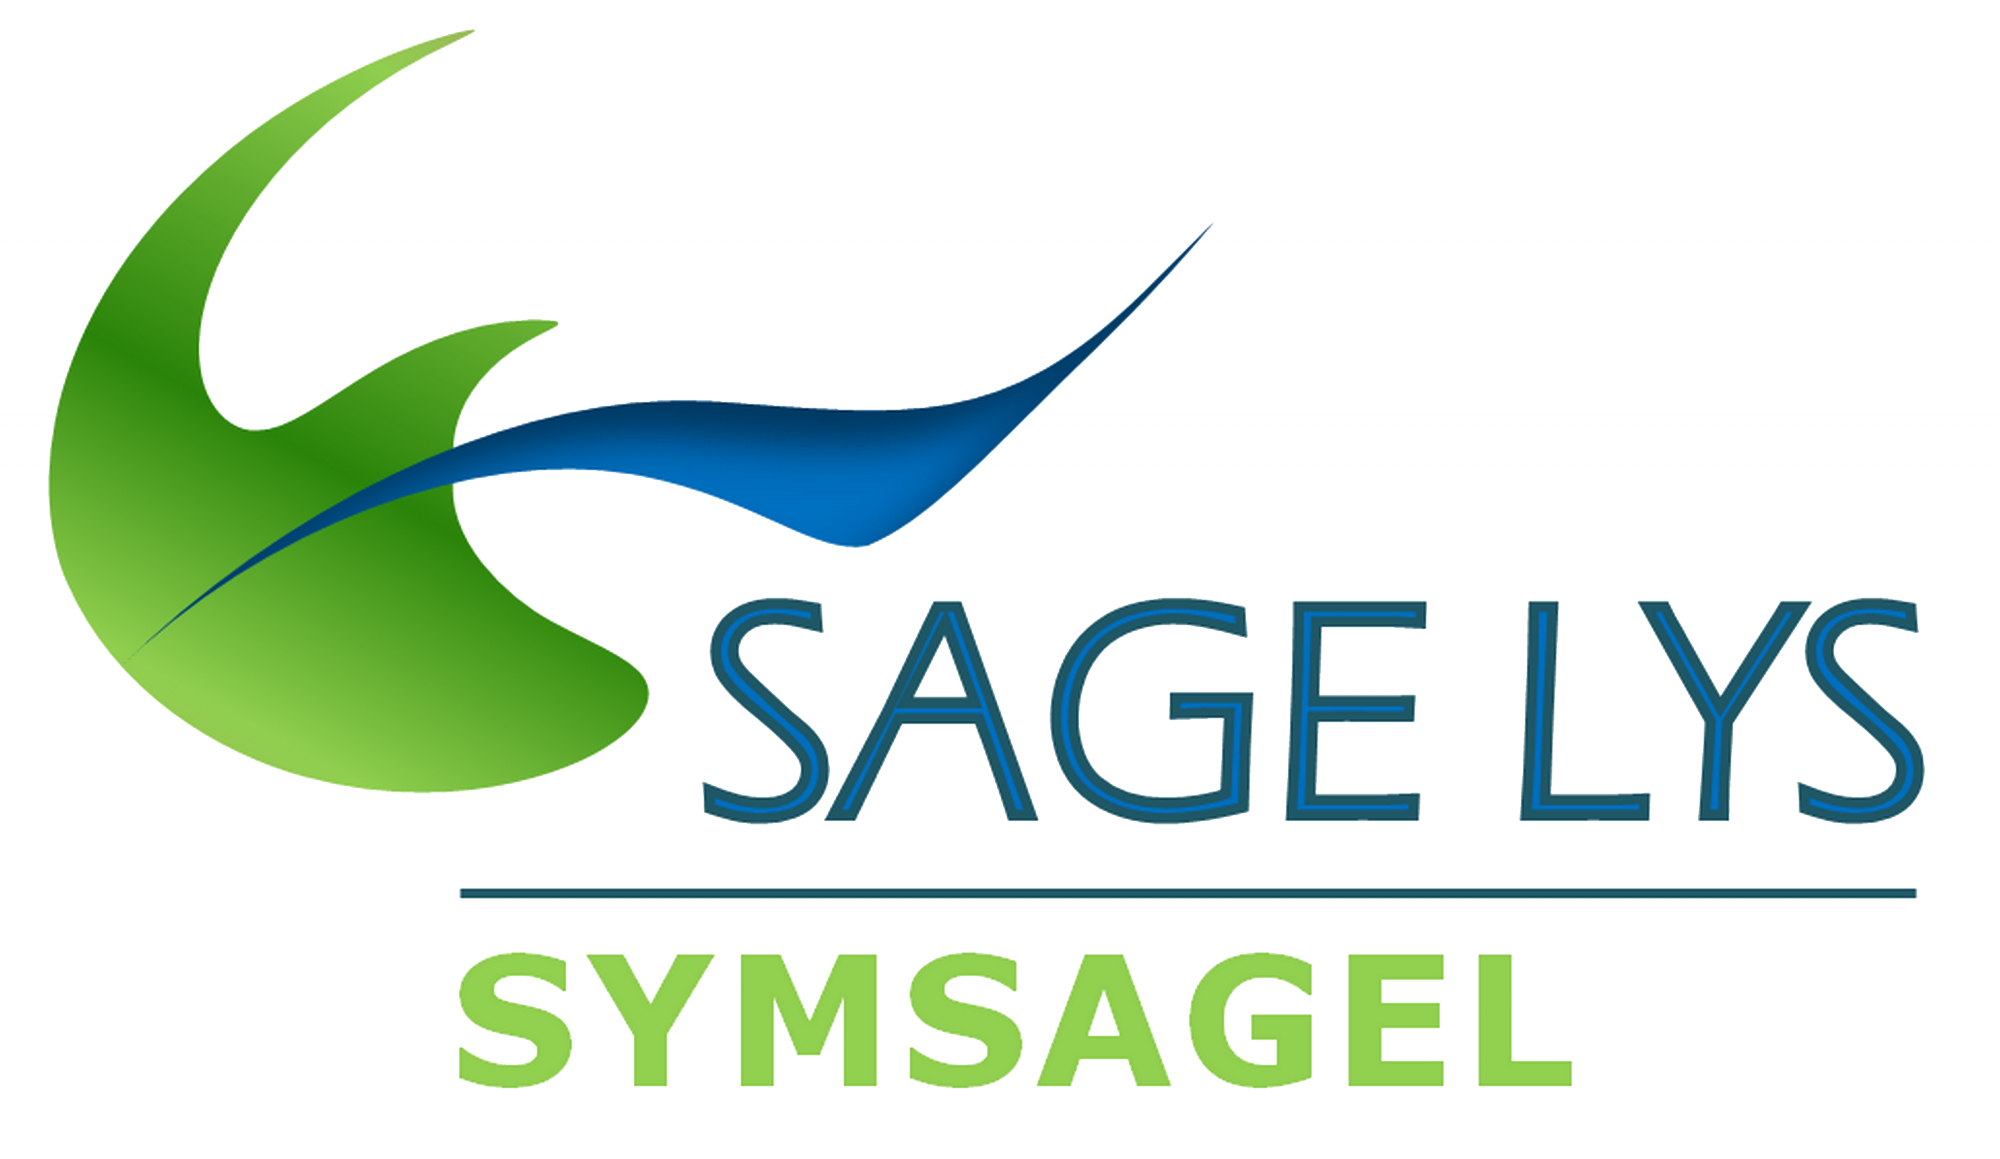 SAGE_lys_sym